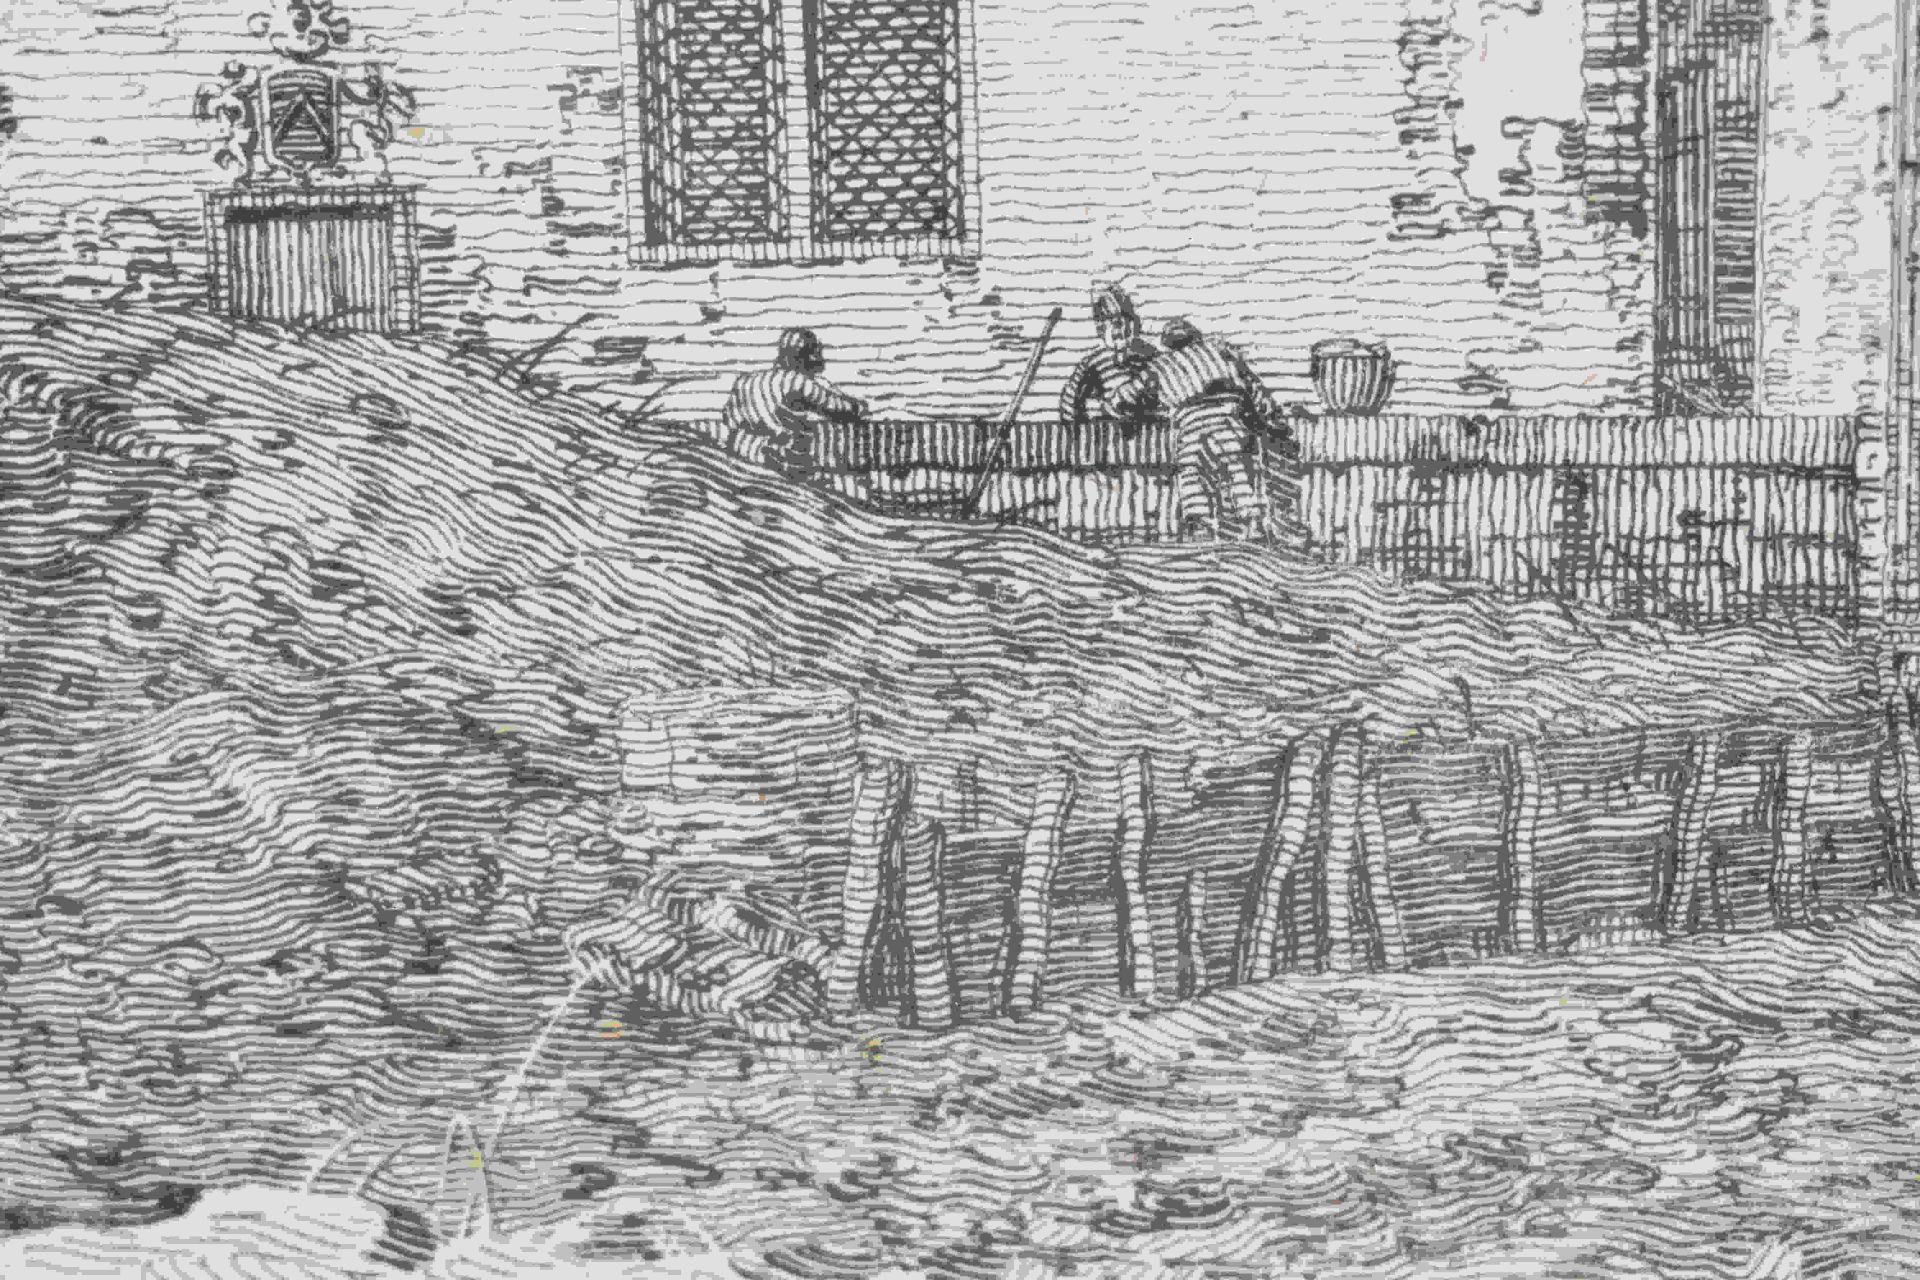 Canal, Giovanni Antonio, gen. Canaletto: Il portico con la lanterna - Bild 24 aus 24